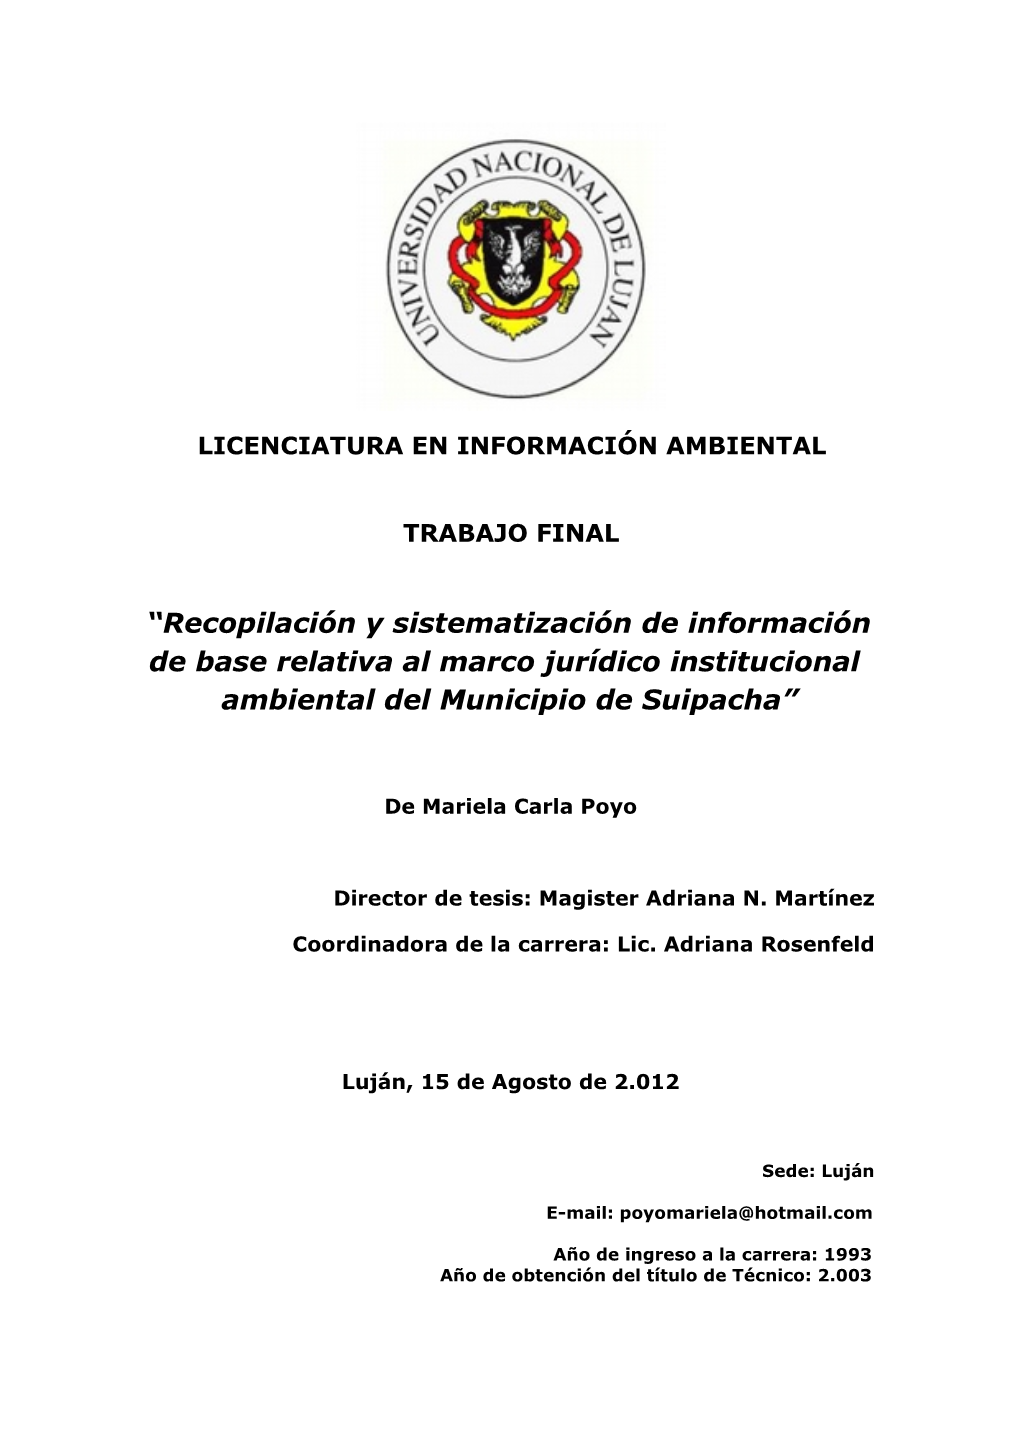 Recopilación Y Sistematización De Información De Base Relativa Al Marco Jurídico Institucional Ambiental Del Municipio De Suipacha”